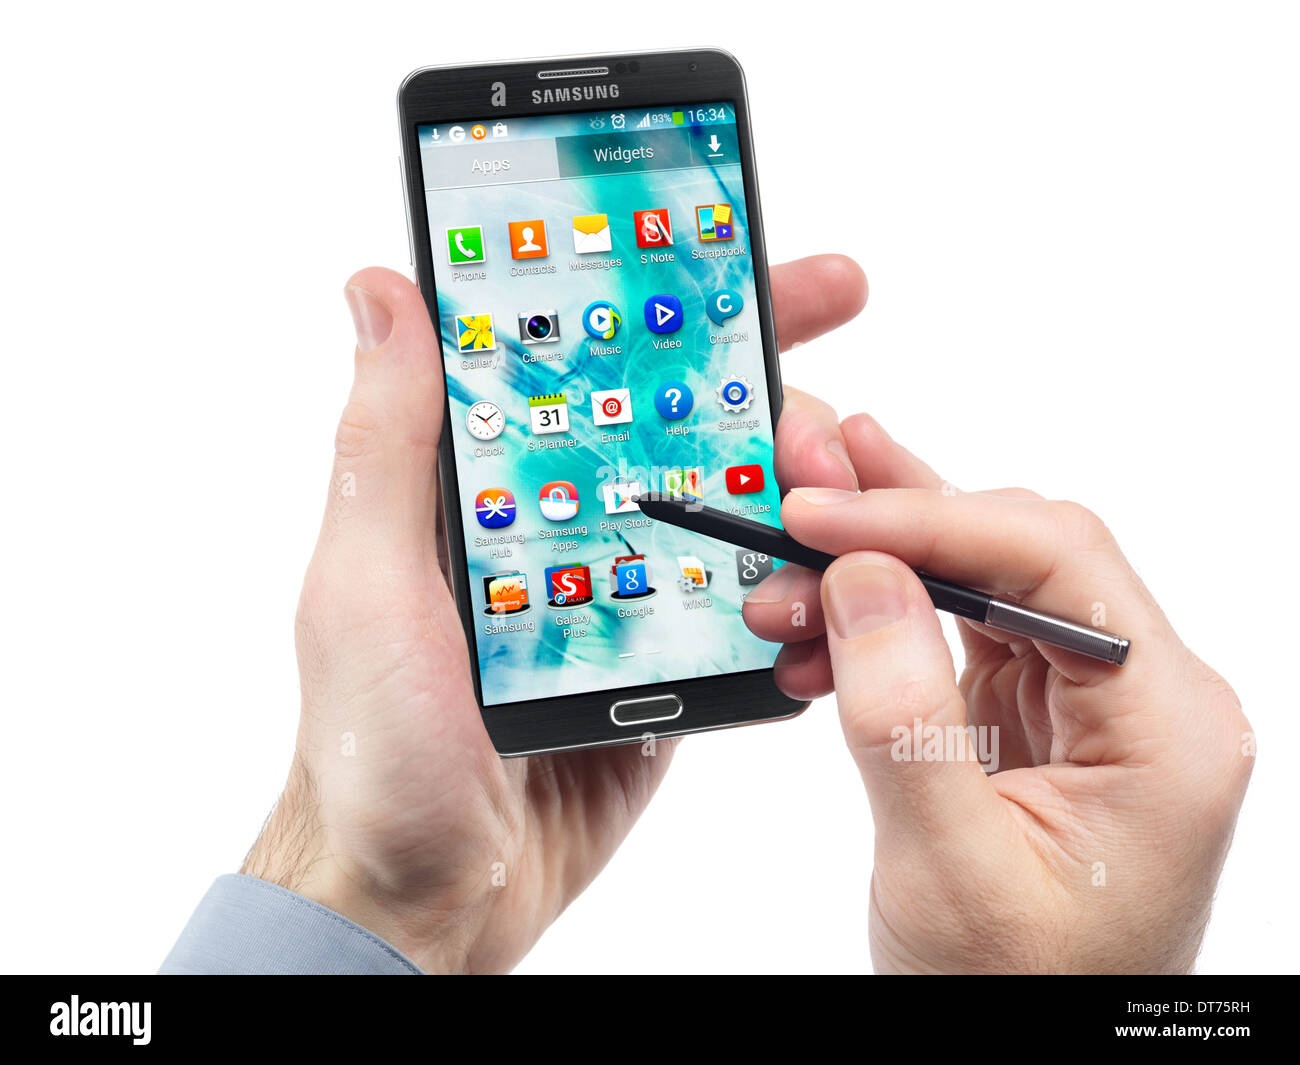 L'uomo le mani con Samsung Galaxy nota III smartphone isolati su sfondo bianco Foto Stock